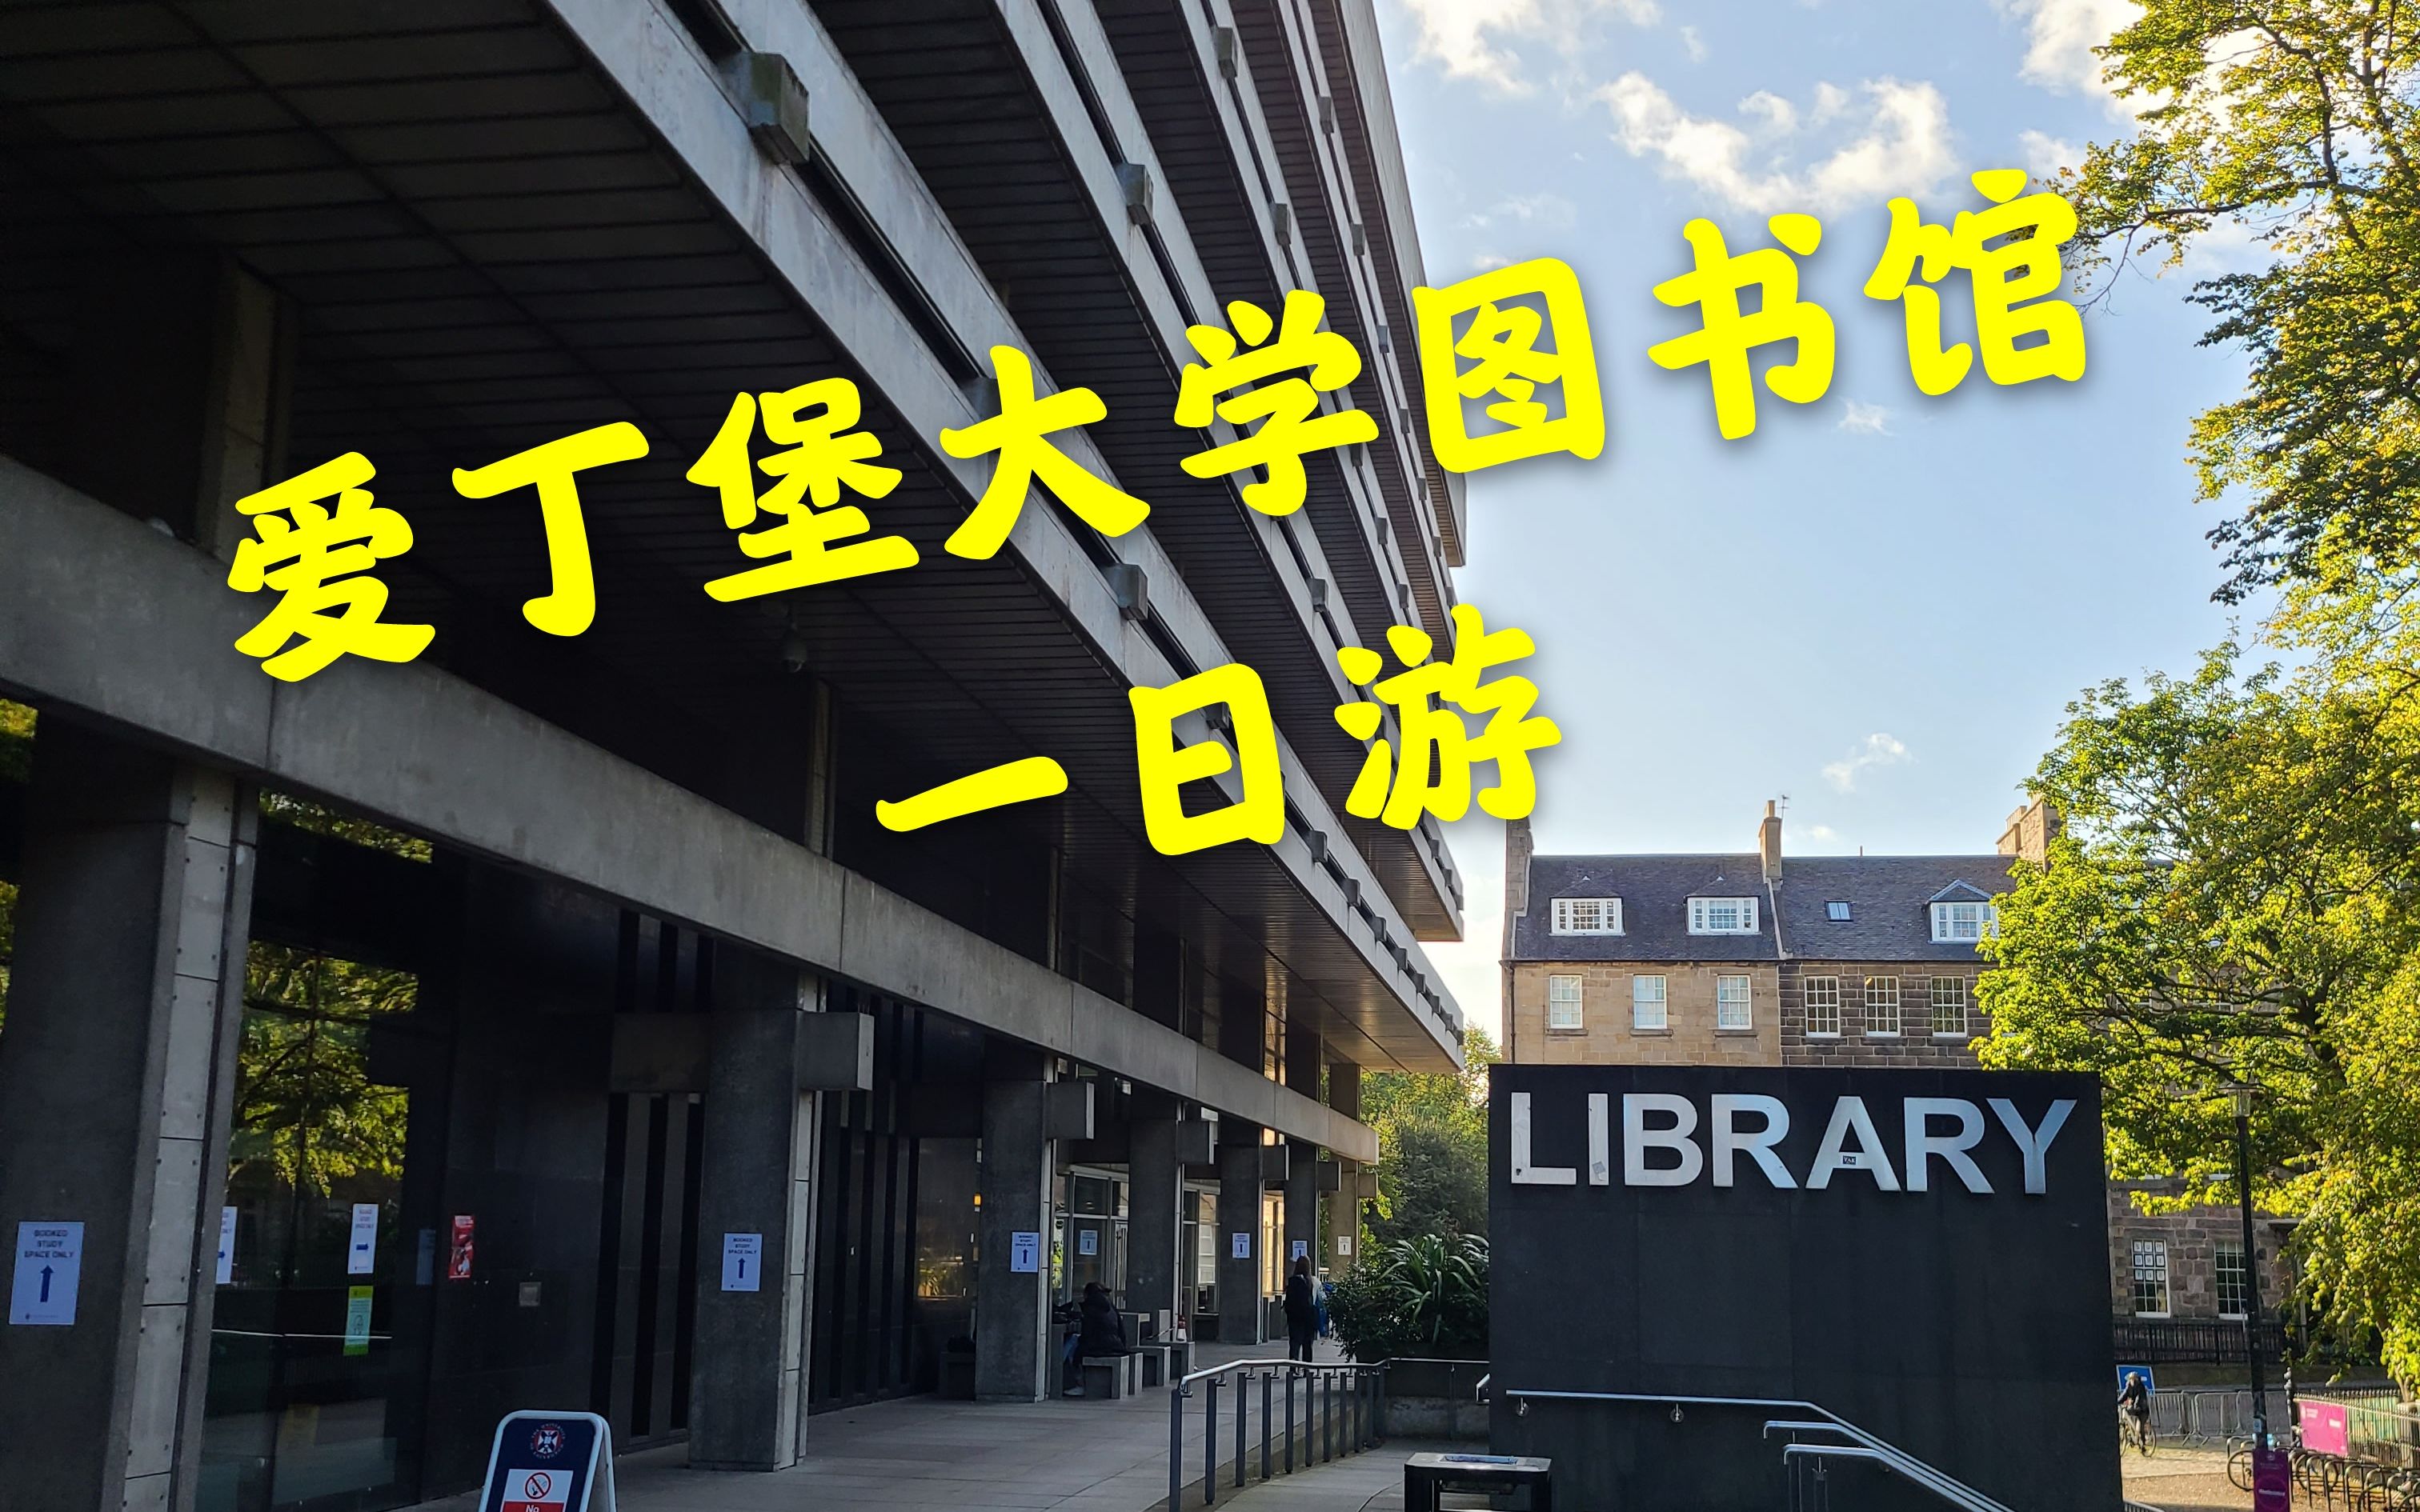 【留学日常】爱丁堡大学主图&莫雷图书馆